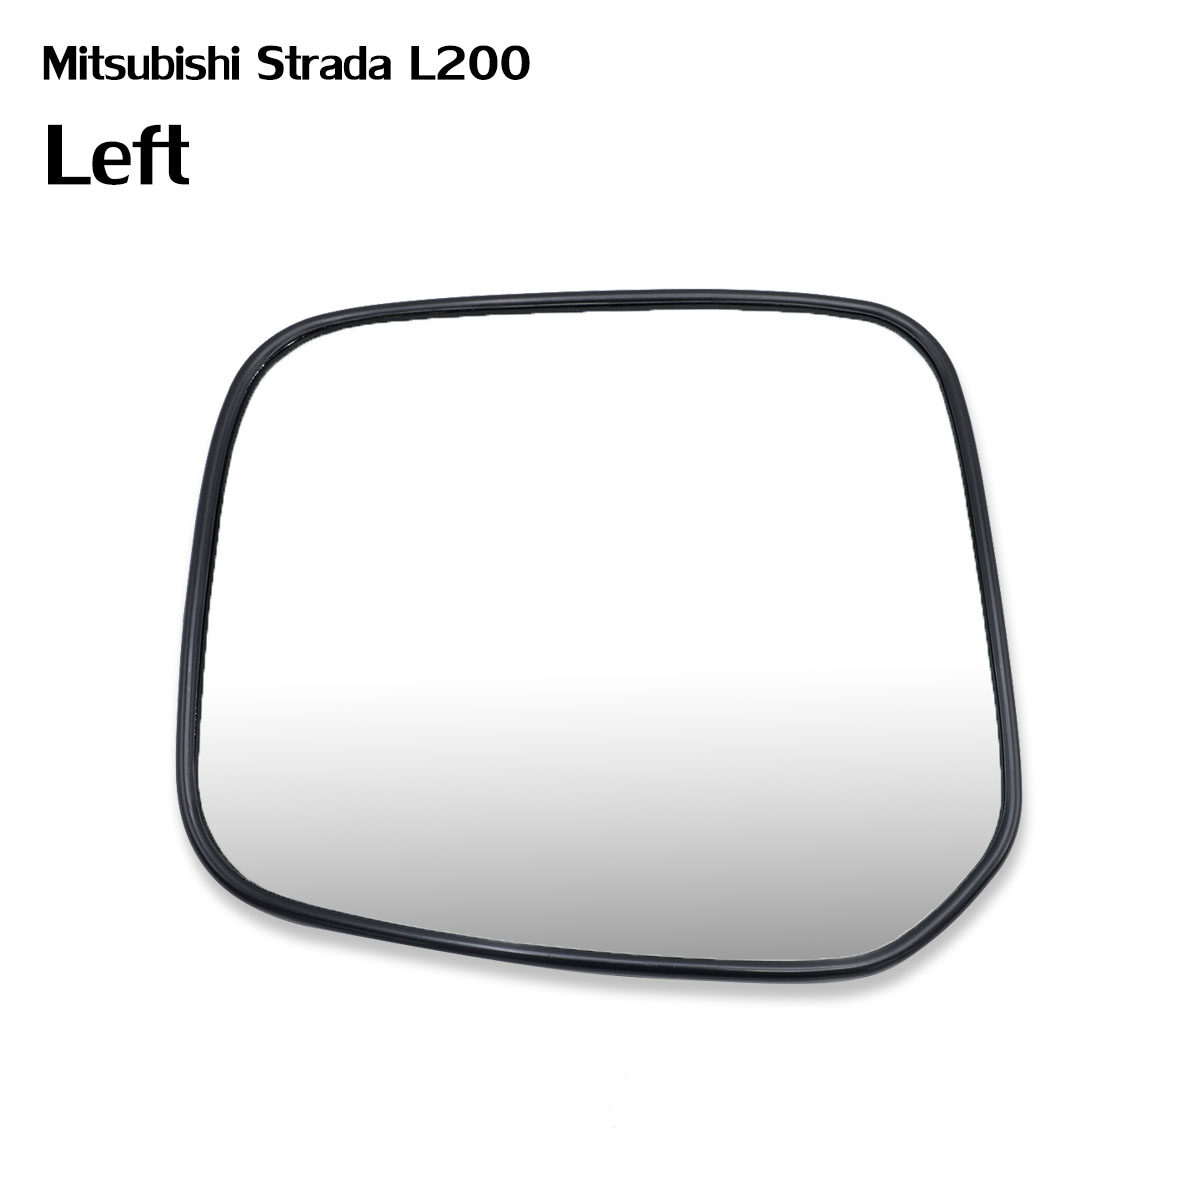 เนื้อเลนส์กระจก ข้าง ซ้าย  ใส่ Mitsubishi L200 New Starada Pick Up 2000 - 2005  LH Wing Side Door Mirror Glass Len L200 Strada Animal 2000-2005 Toyota มีบริการเก็บเงินปลายทาง